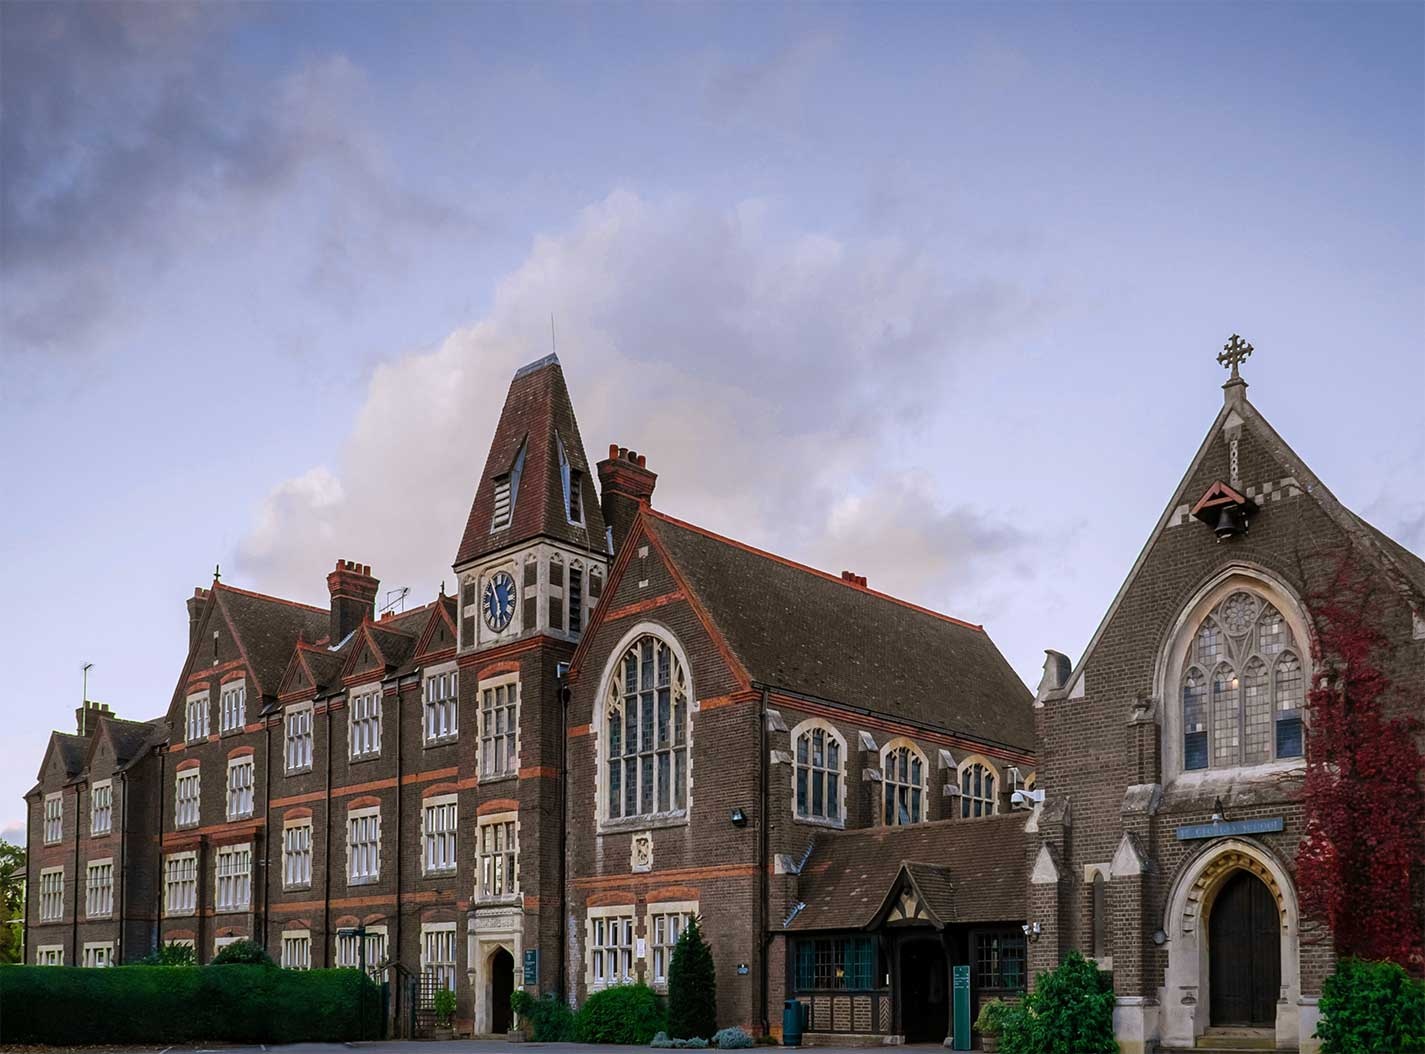 St George's School, Hertfordshire